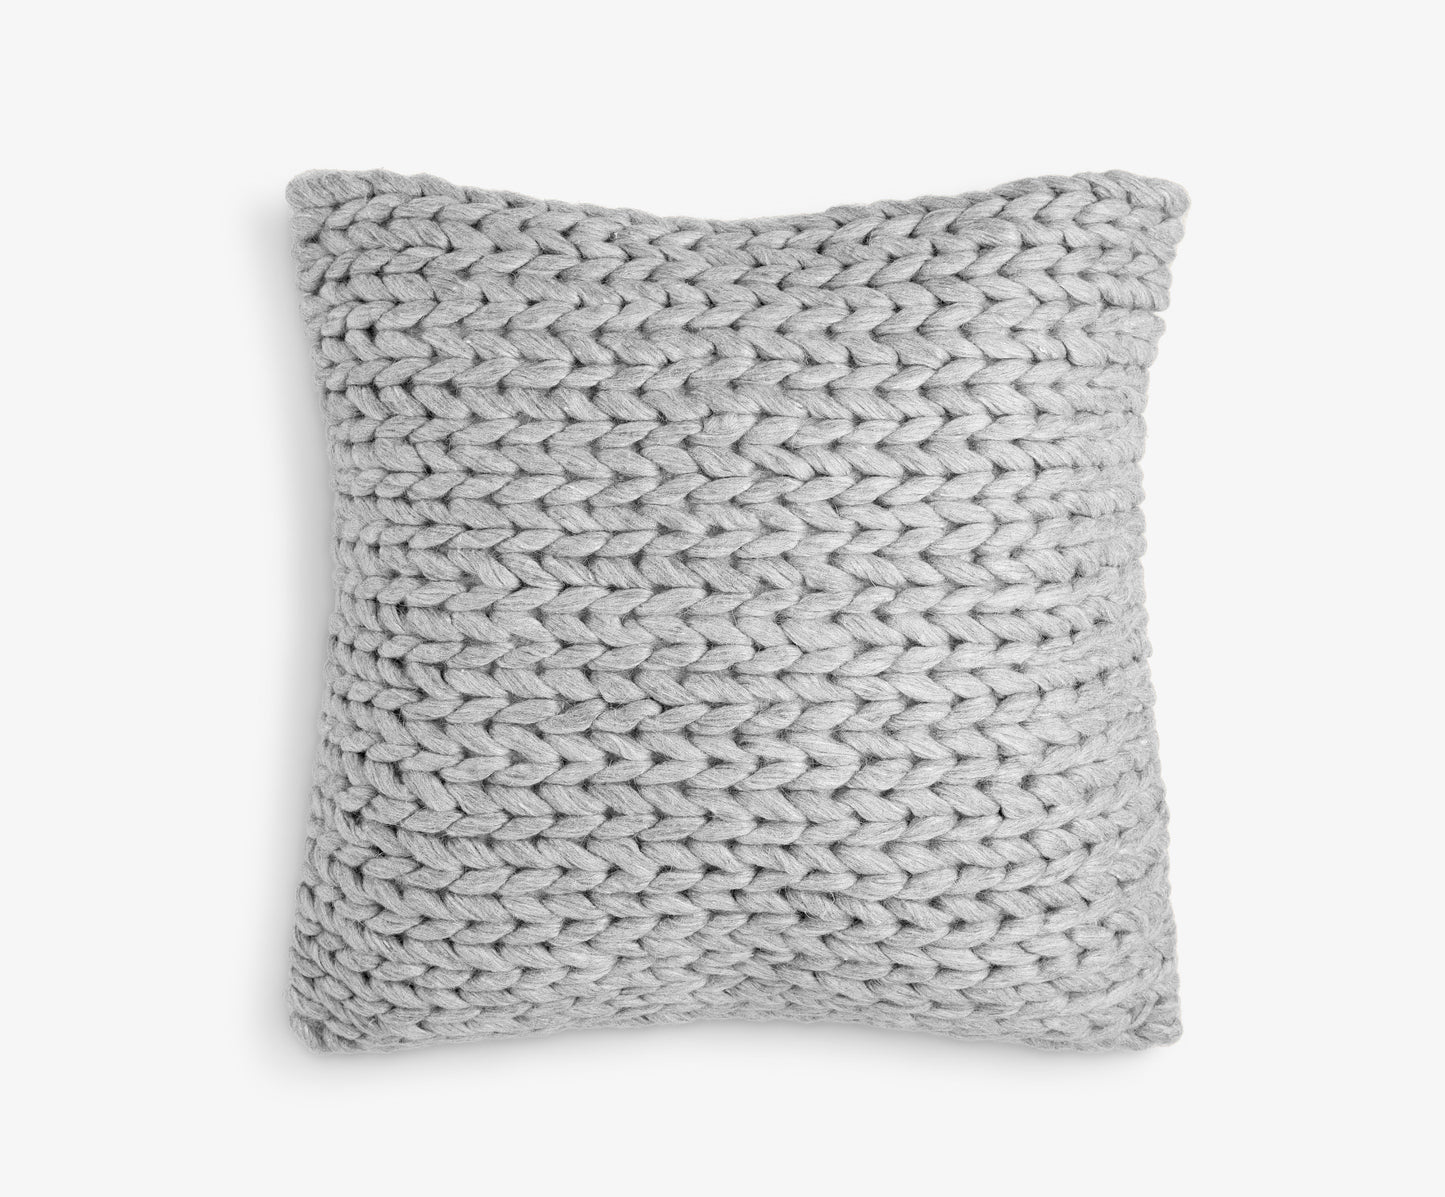 Large Square Dark Grey Knit Cushion